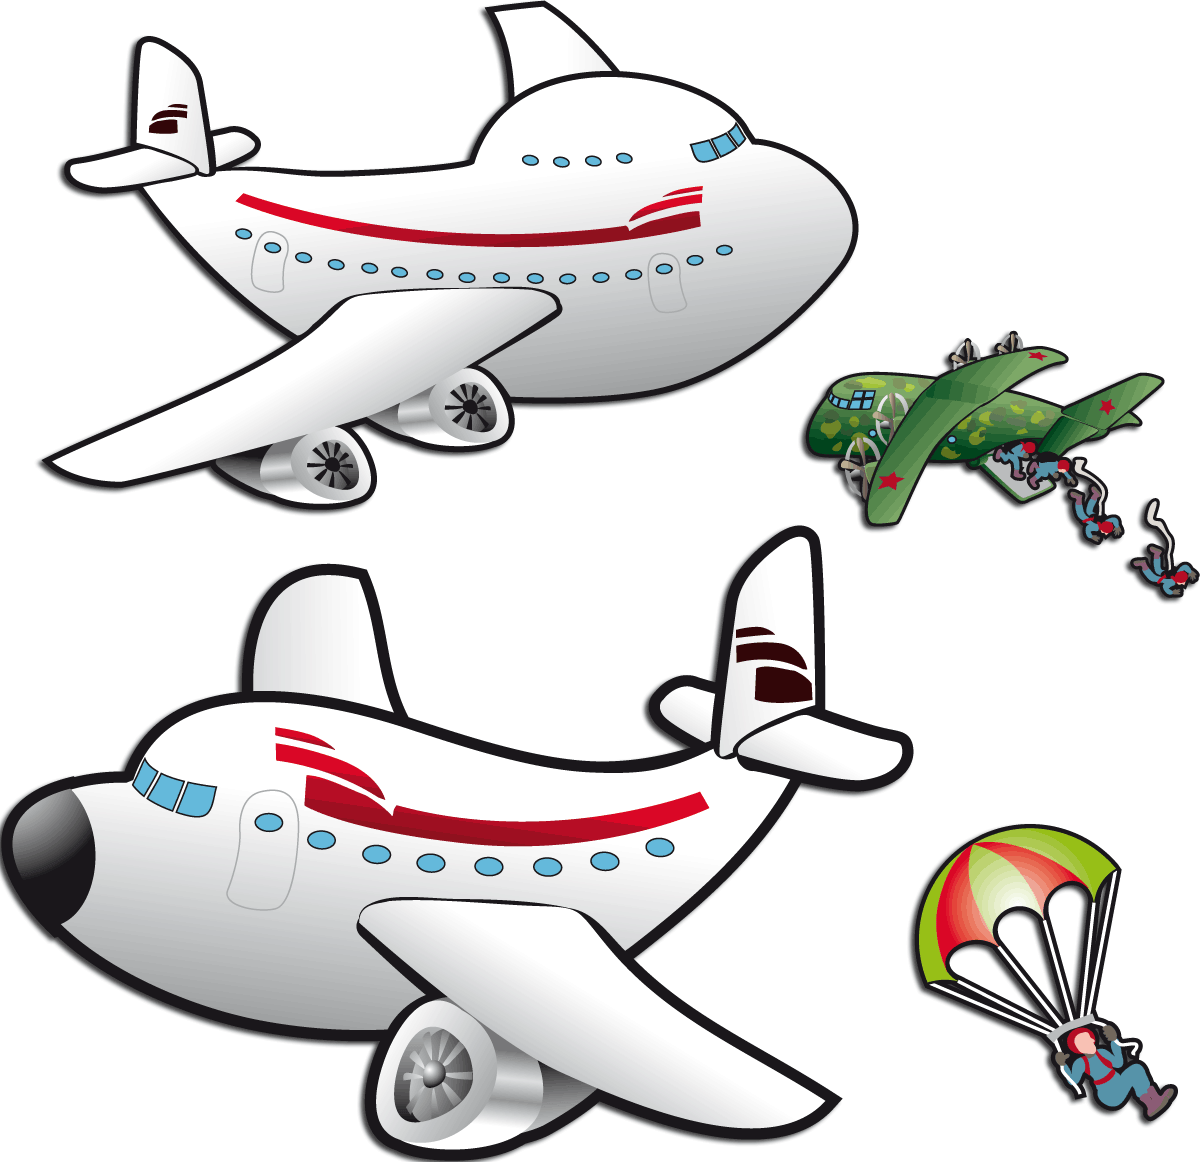 Kinderzimmer Wandtattoo: Flugzeuge und Fallschirmspringer